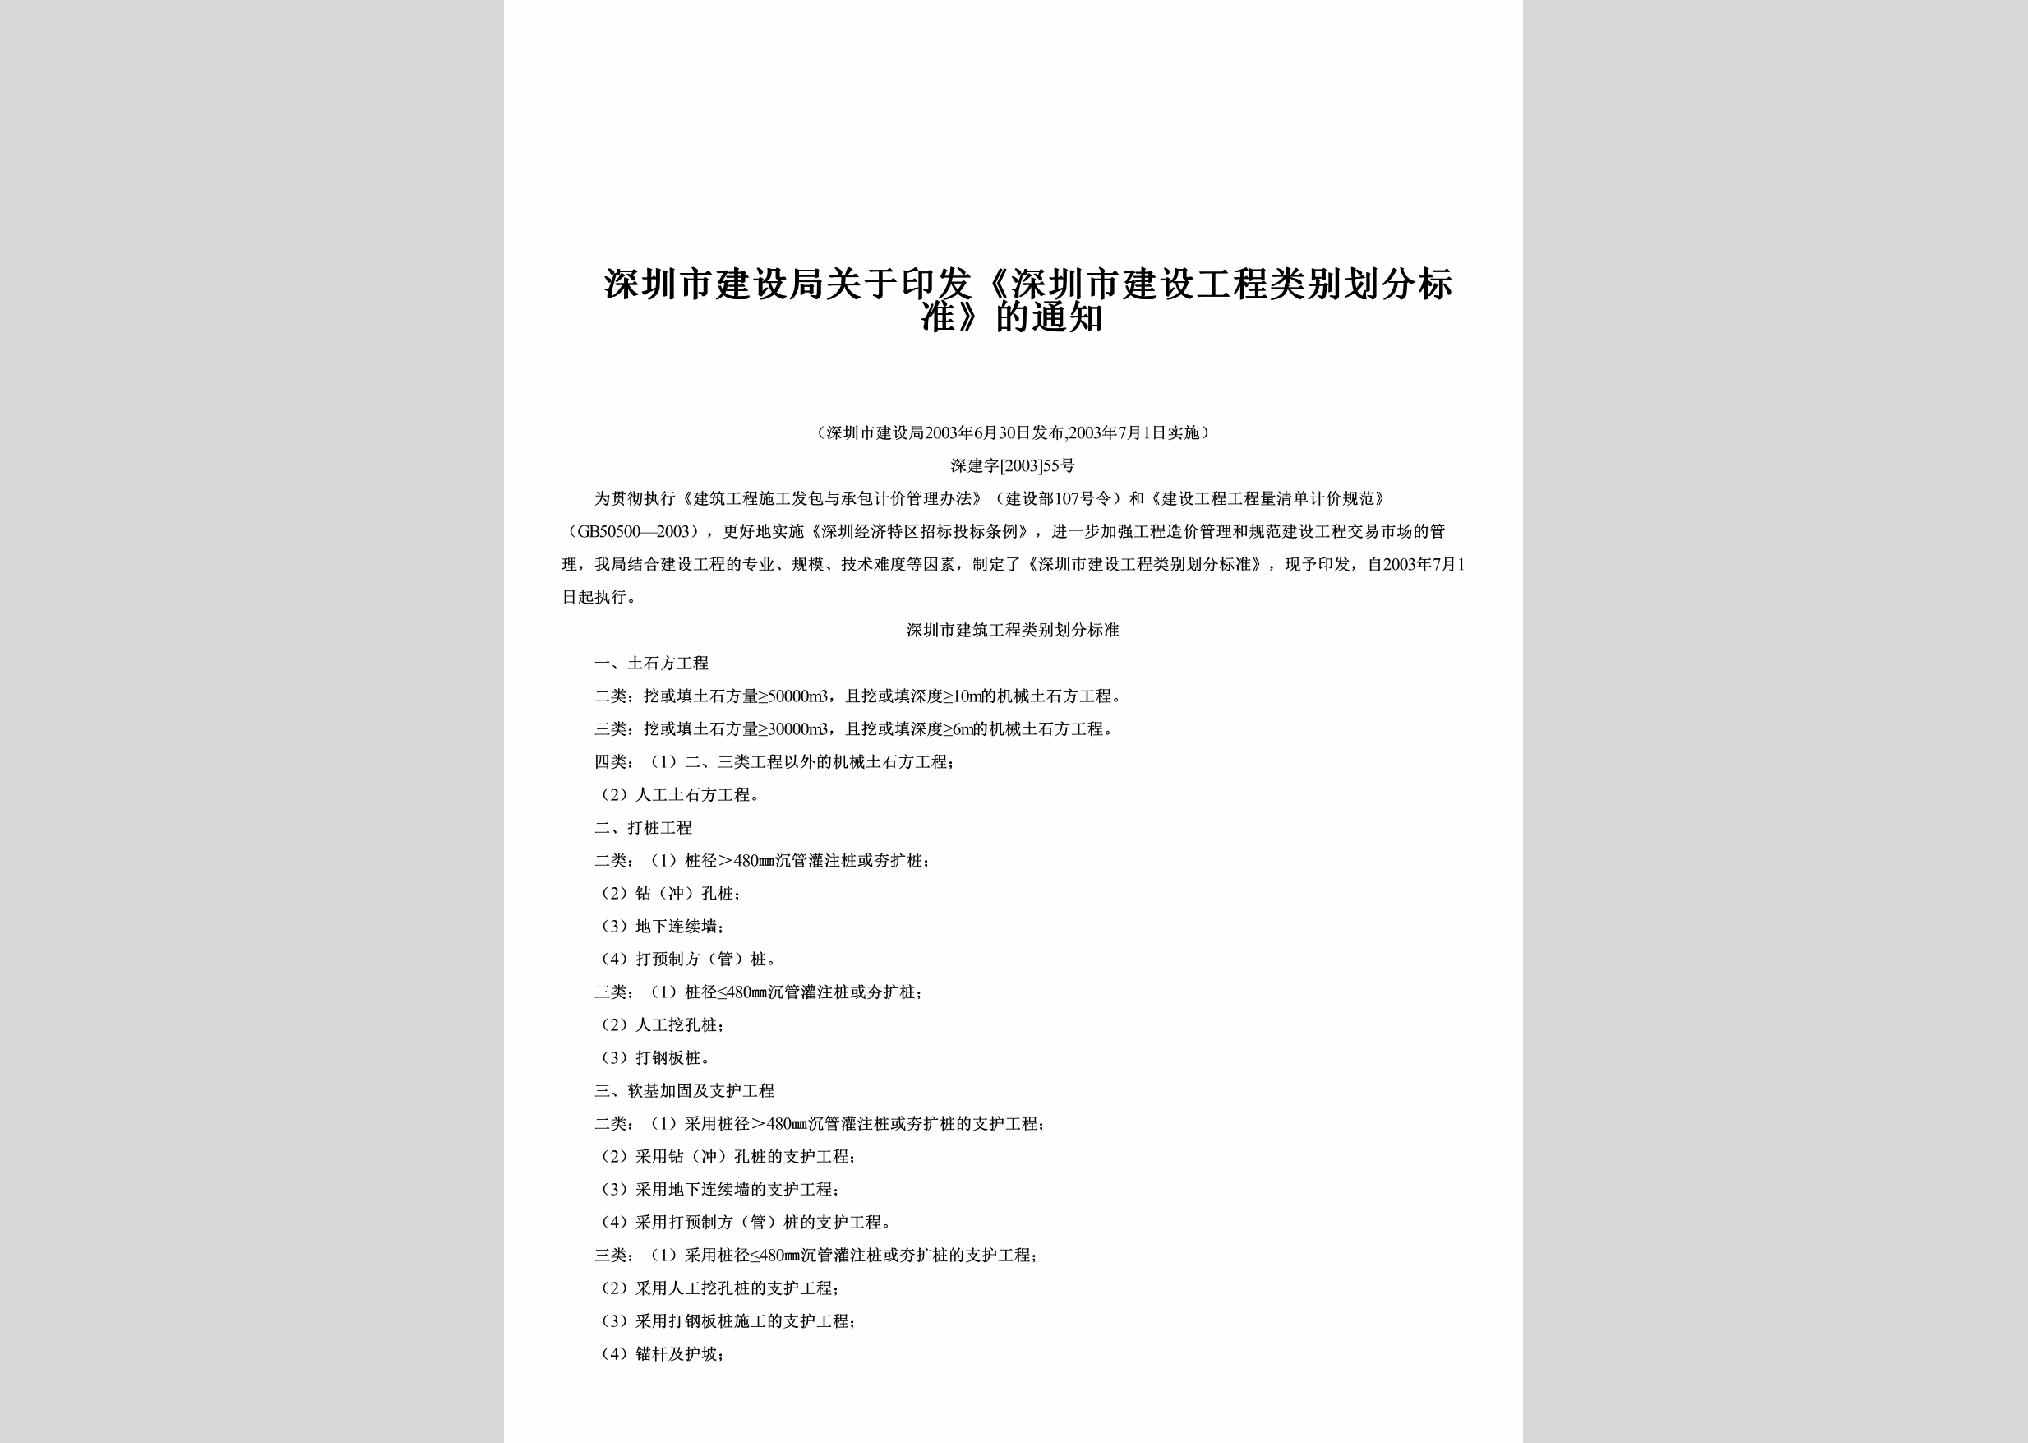 深建字[2003]55号：关于印发《深圳市建设工程类别划分标准》的通知